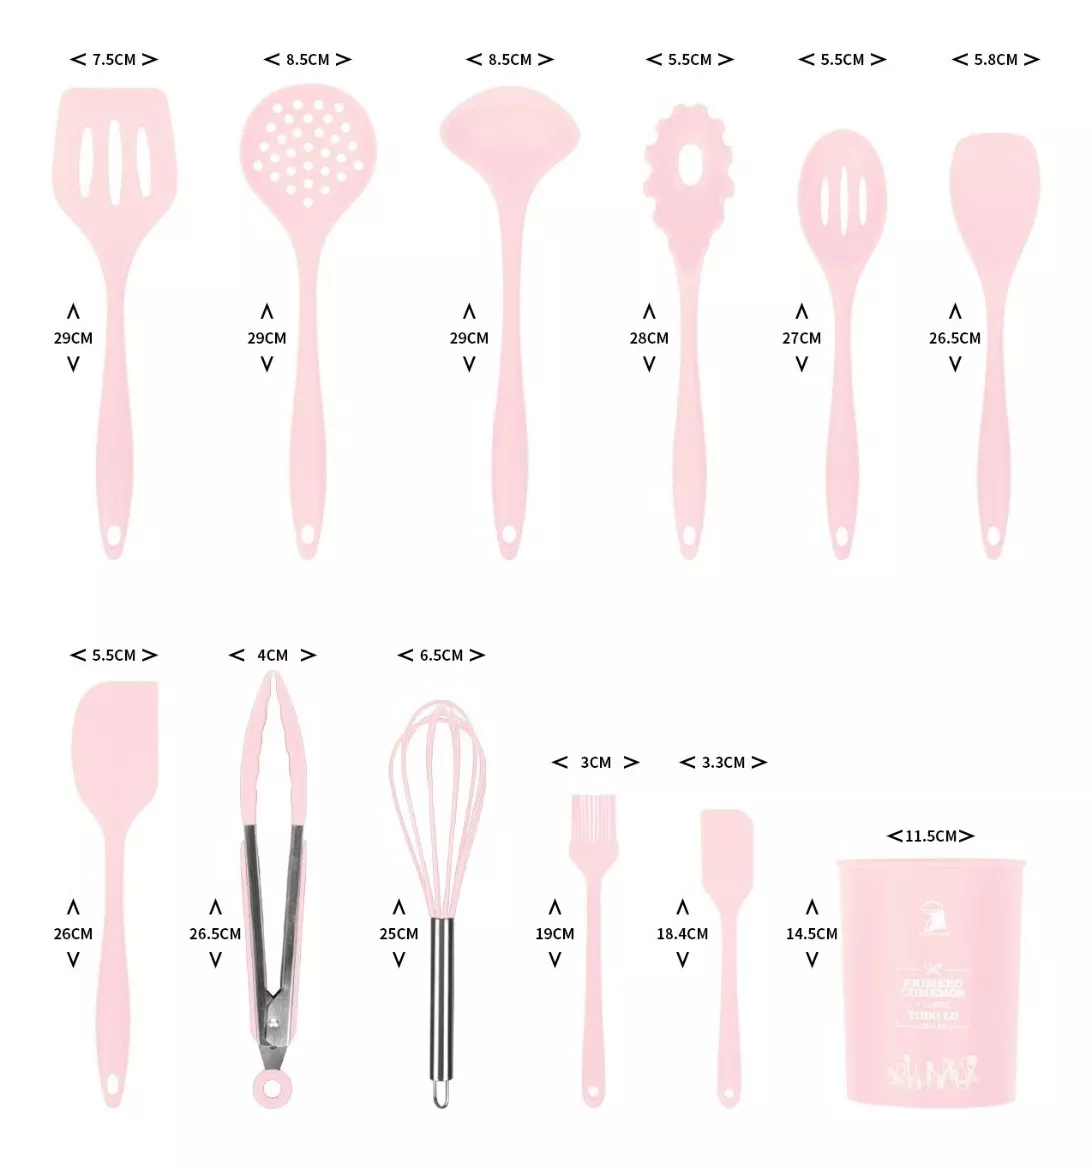 Primera imagen para búsqueda de cucharones cocina